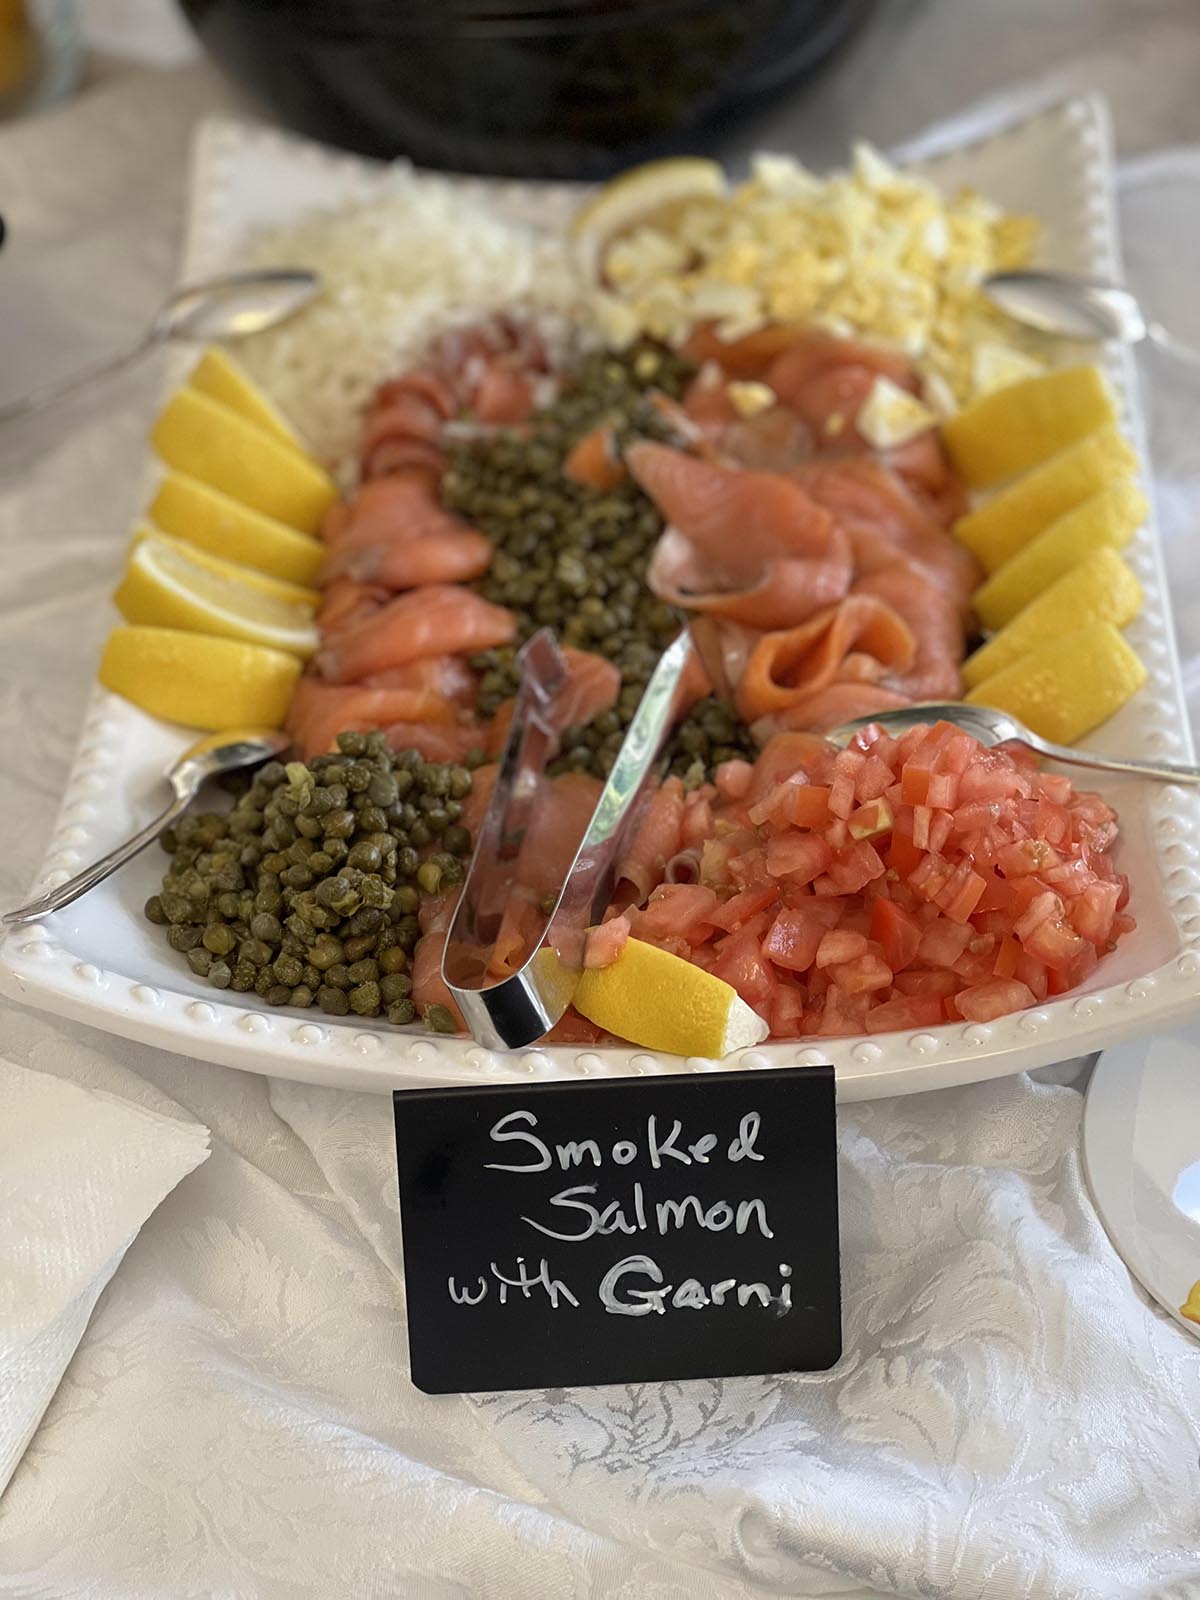 Smoked salmon with garnish